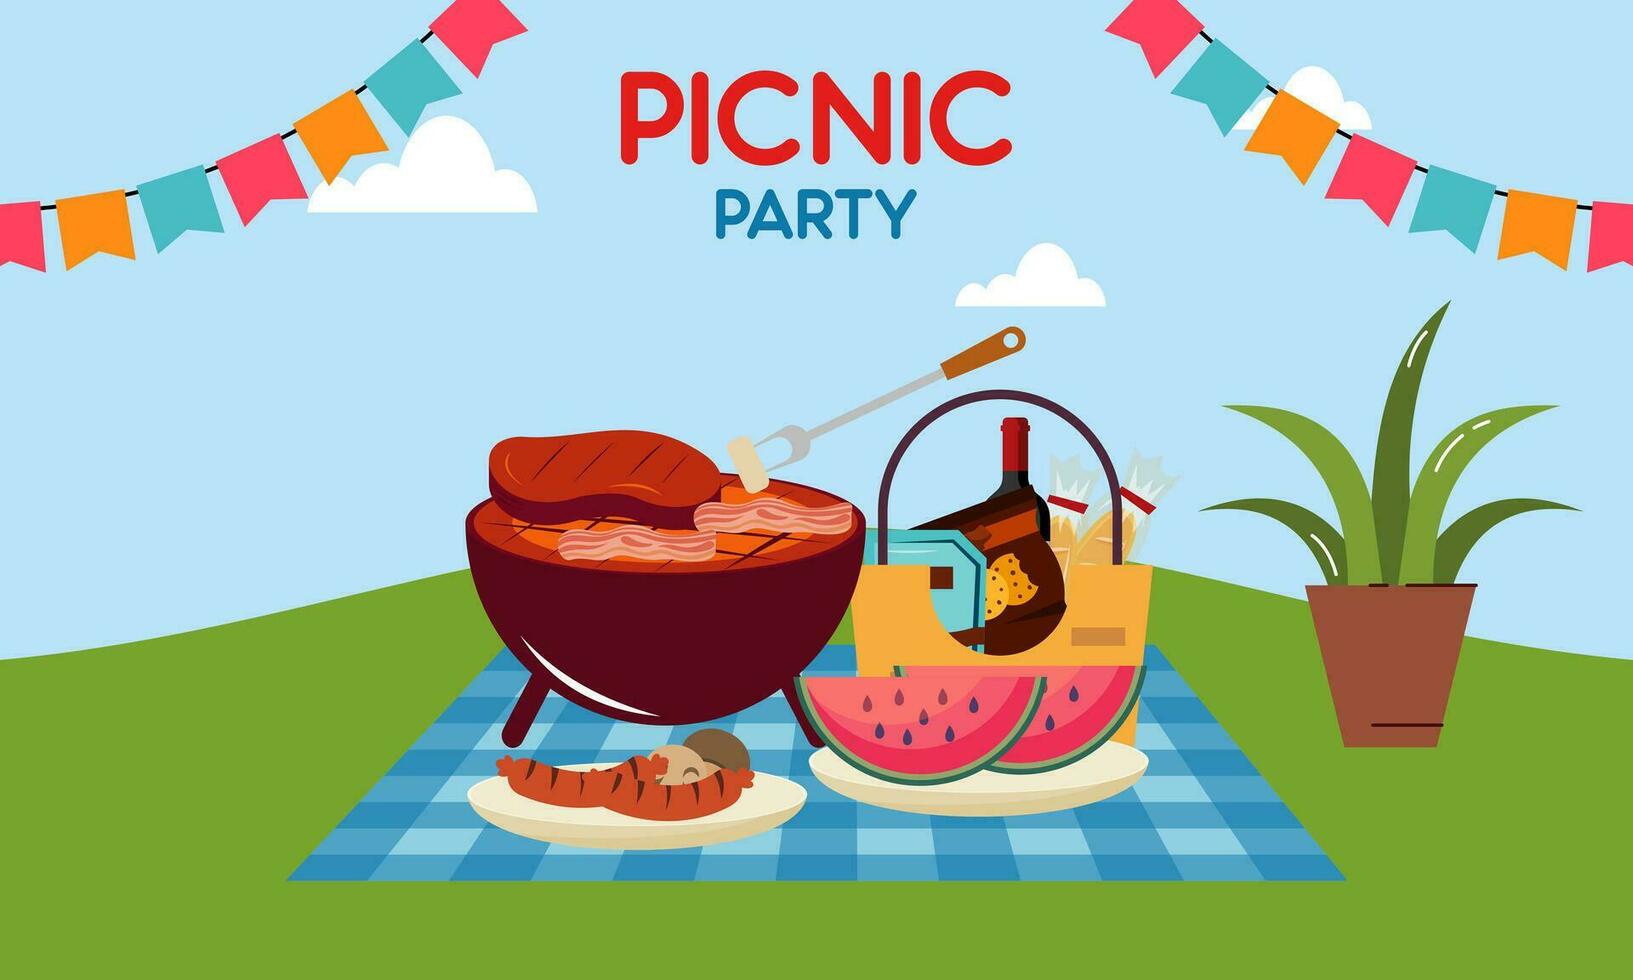 picnic fiesta celebracion escena ilustración vector